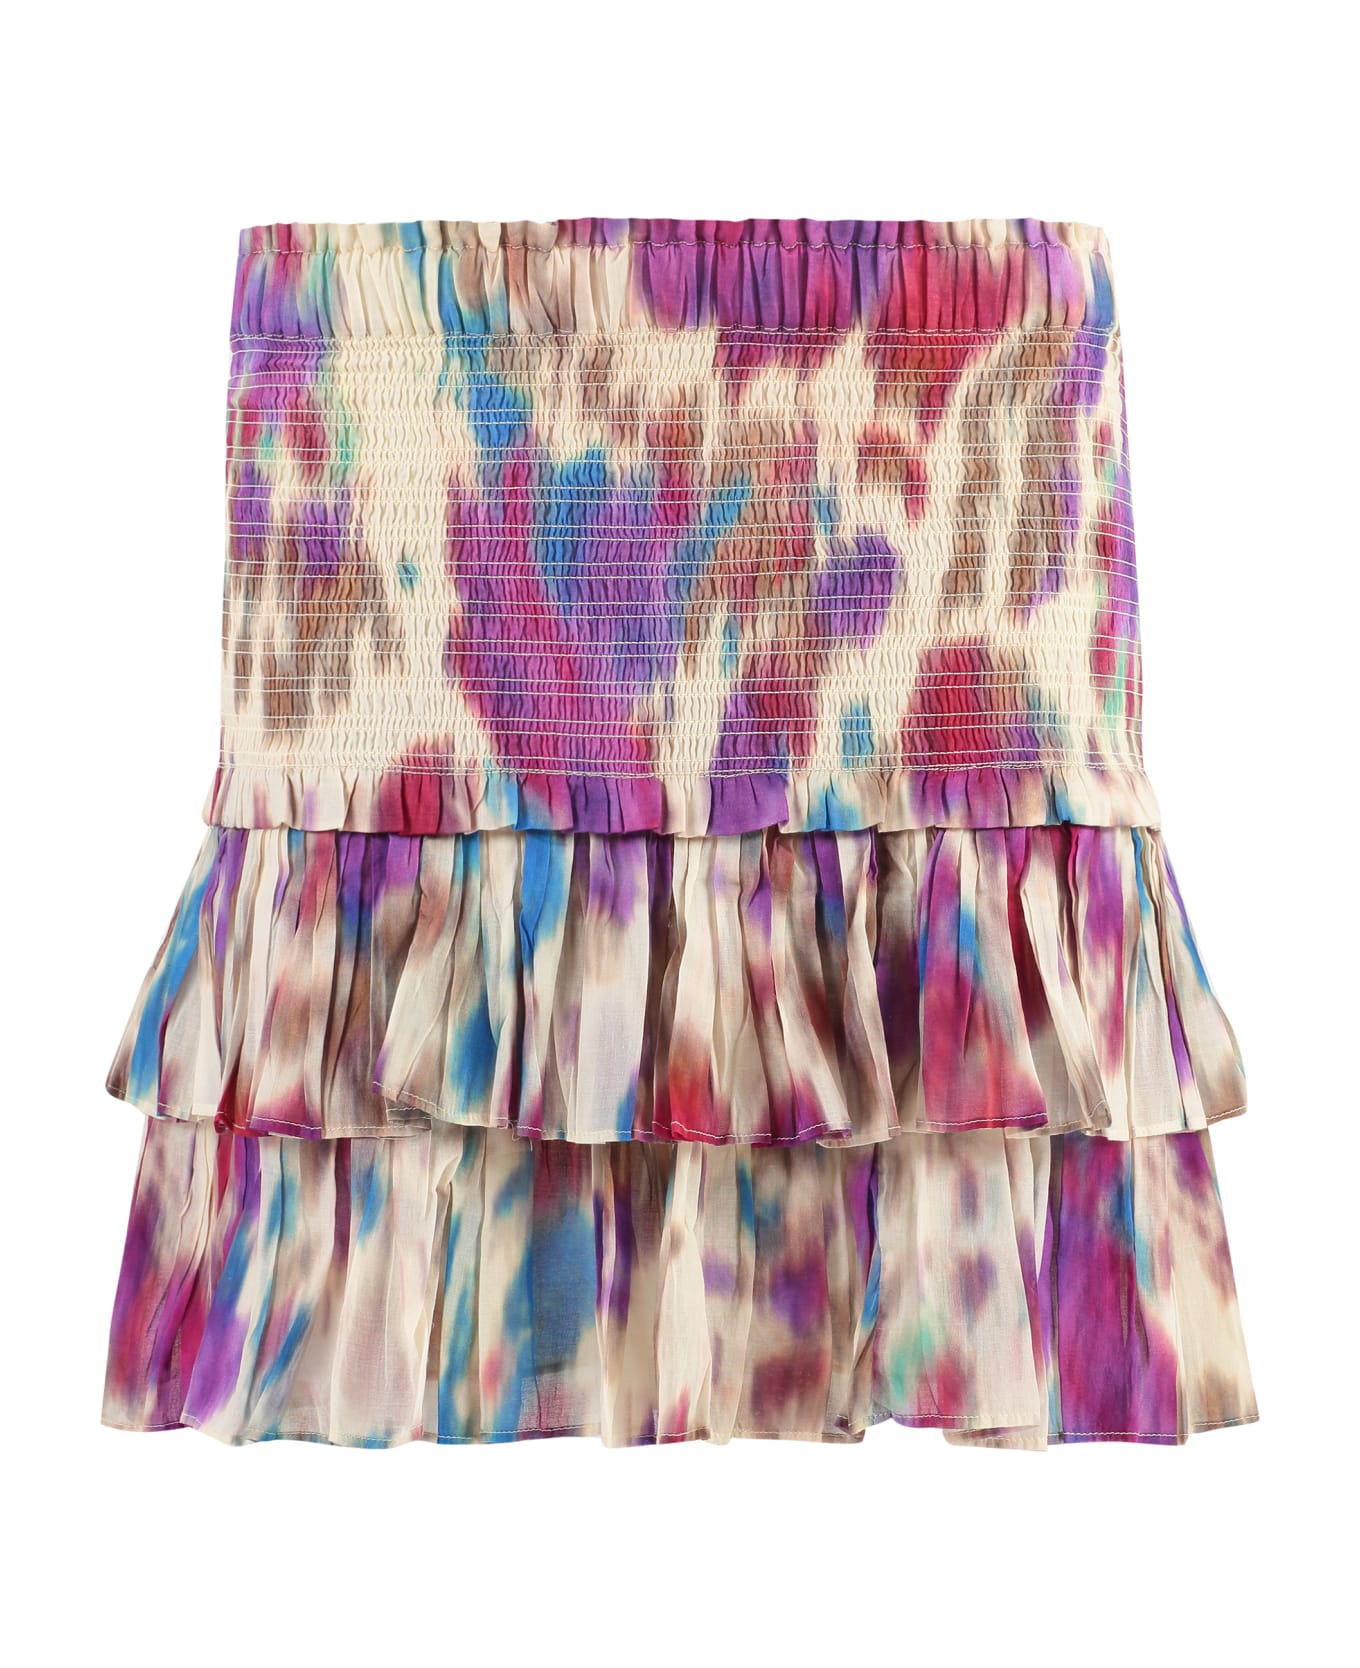 Marant Étoile Naomi Ruffled Mini Skirt - Multicolor スカート